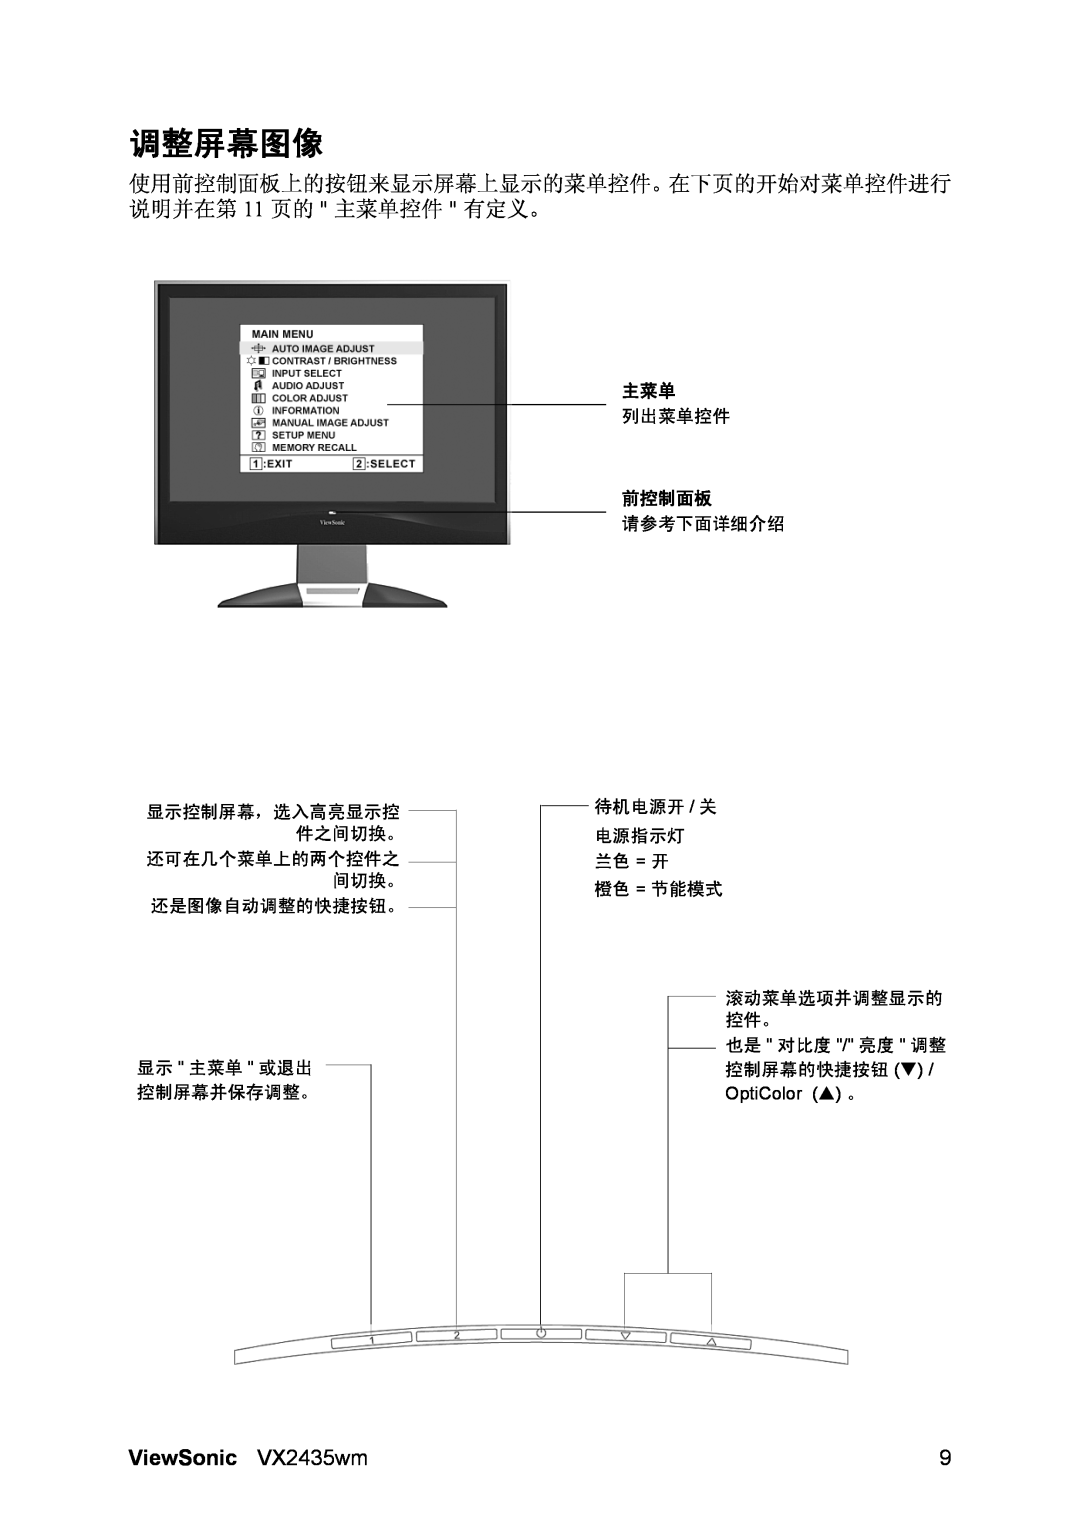 ViewSonic VX2435WM manual 调整屏幕图像, ViewSonic VX2435wm, 列出菜单控件, 前控制面板, 请参考下面详细介绍, 显示控制屏幕，选入高亮显示控 件之间切换。 还可在几个菜单上的两个控件之 间切换。 